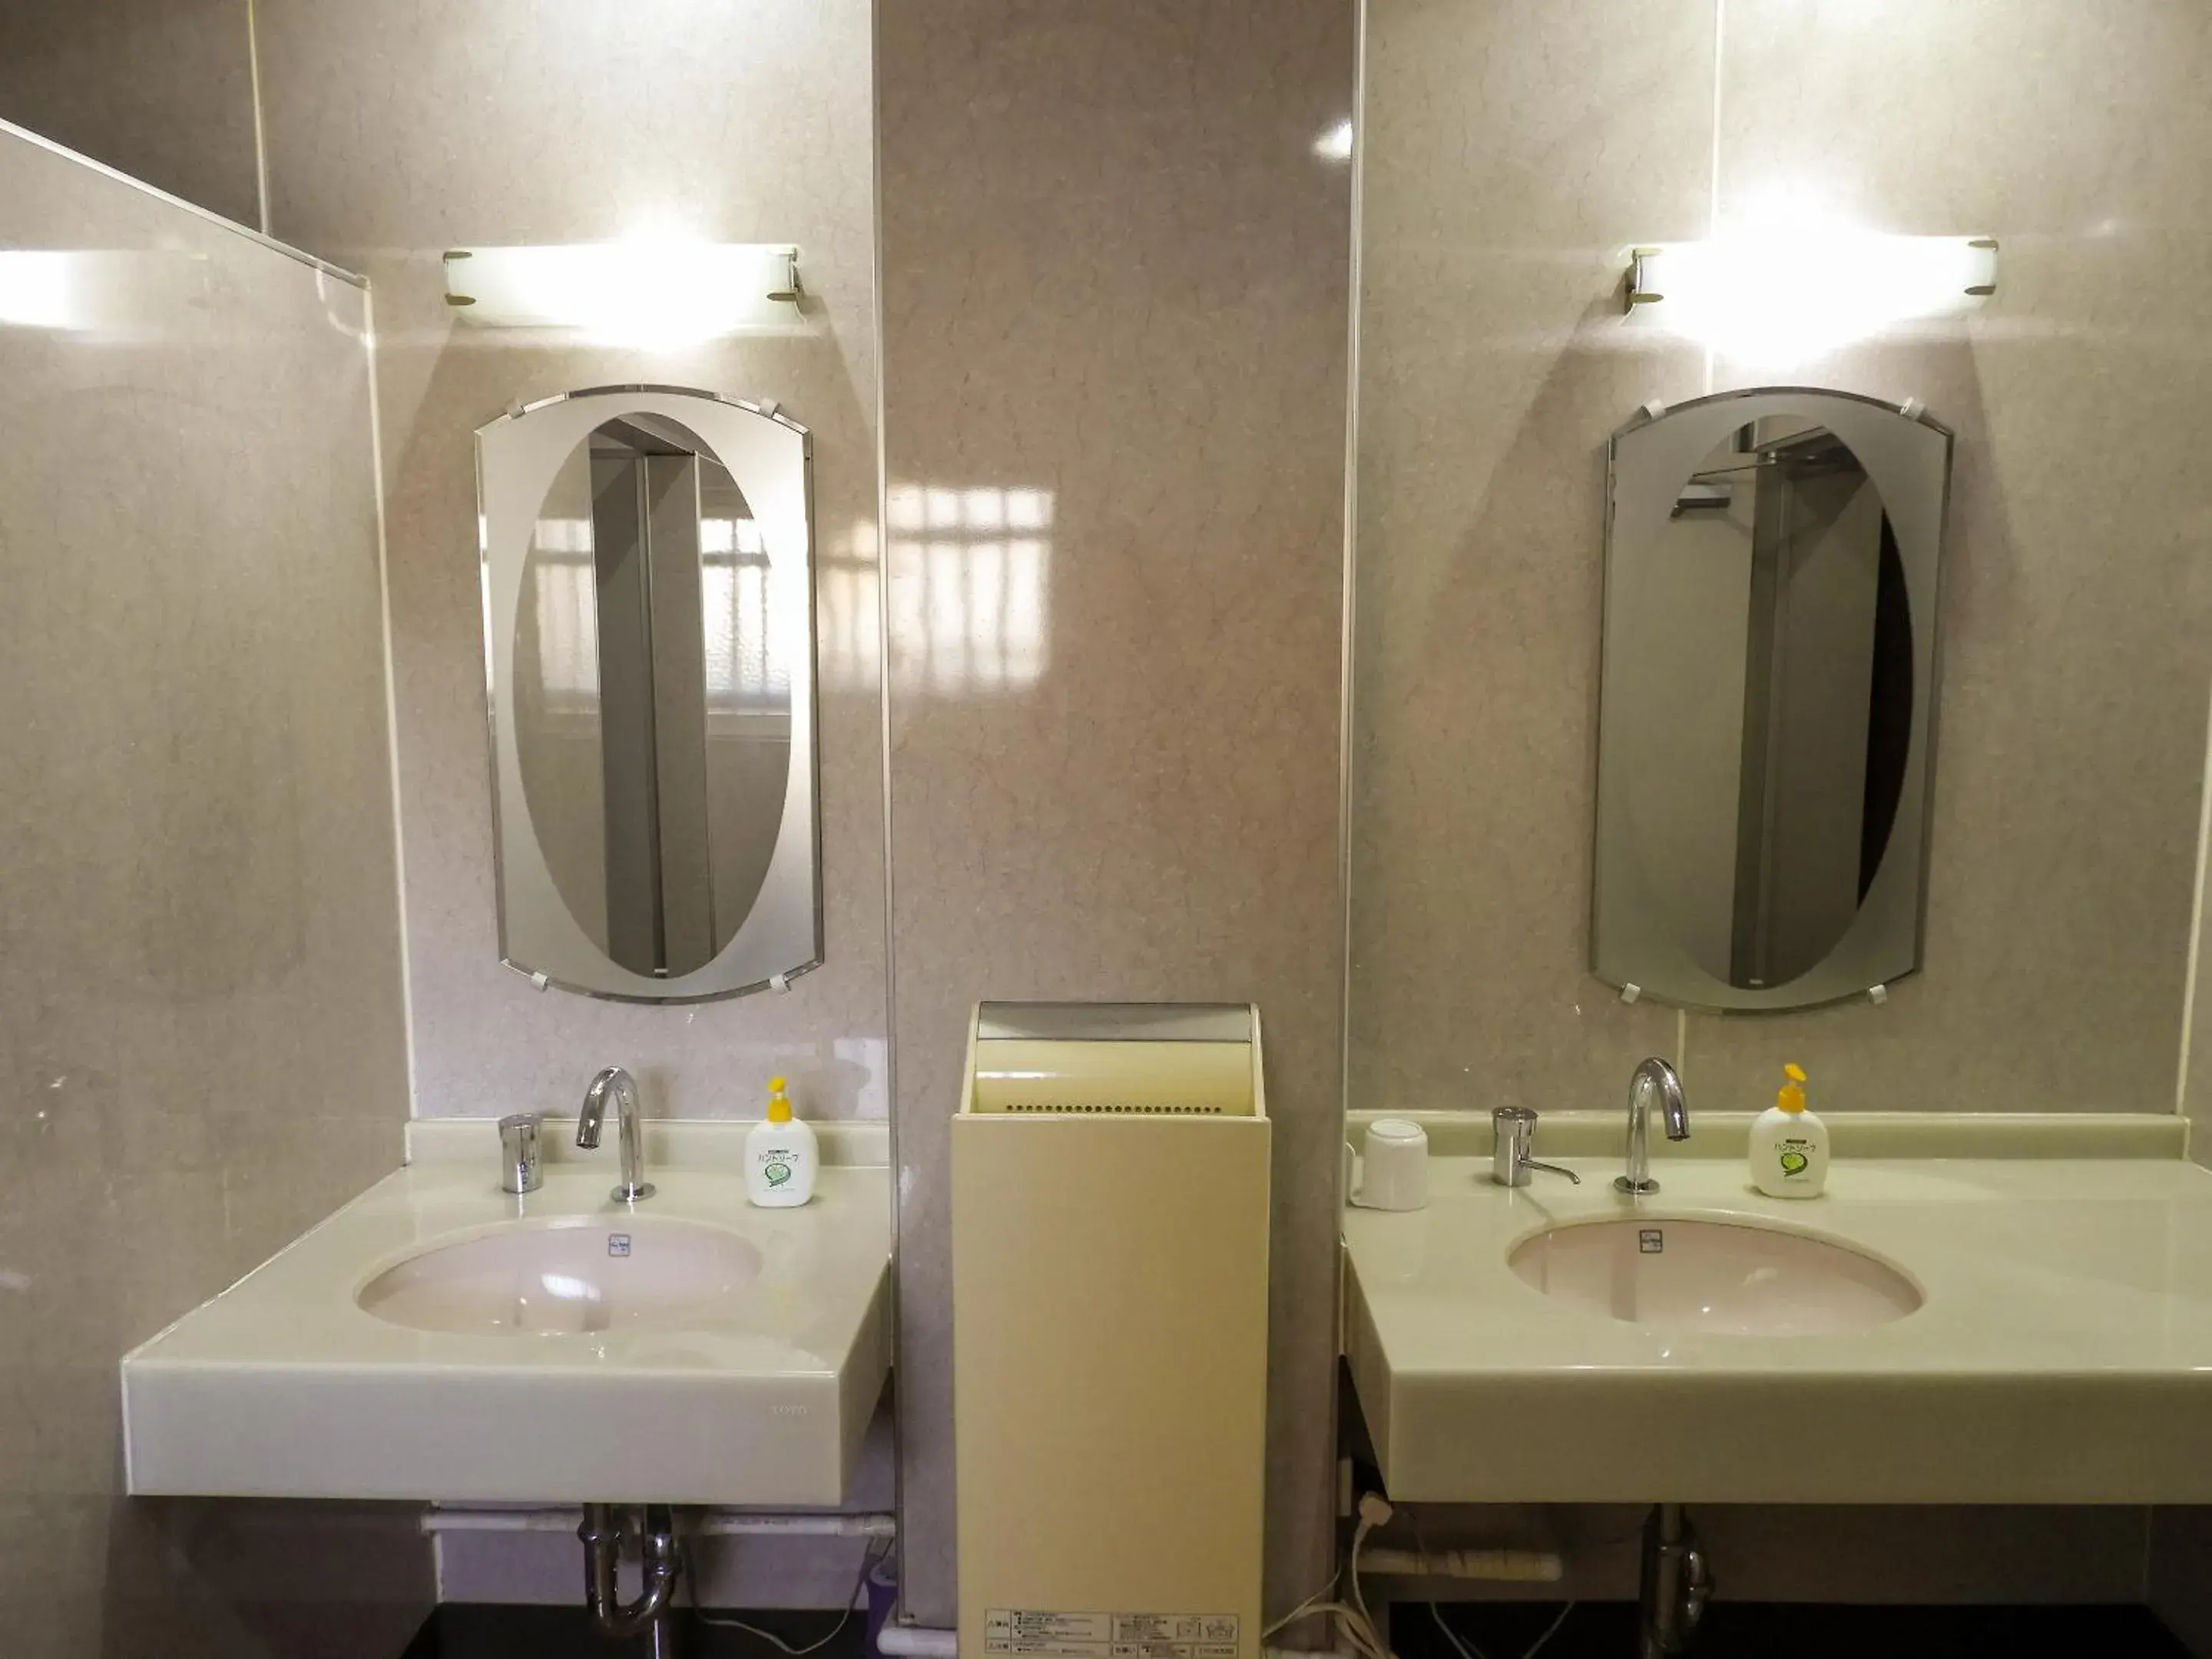 Area and facilities, Bathroom in Yamamoto Ryokan